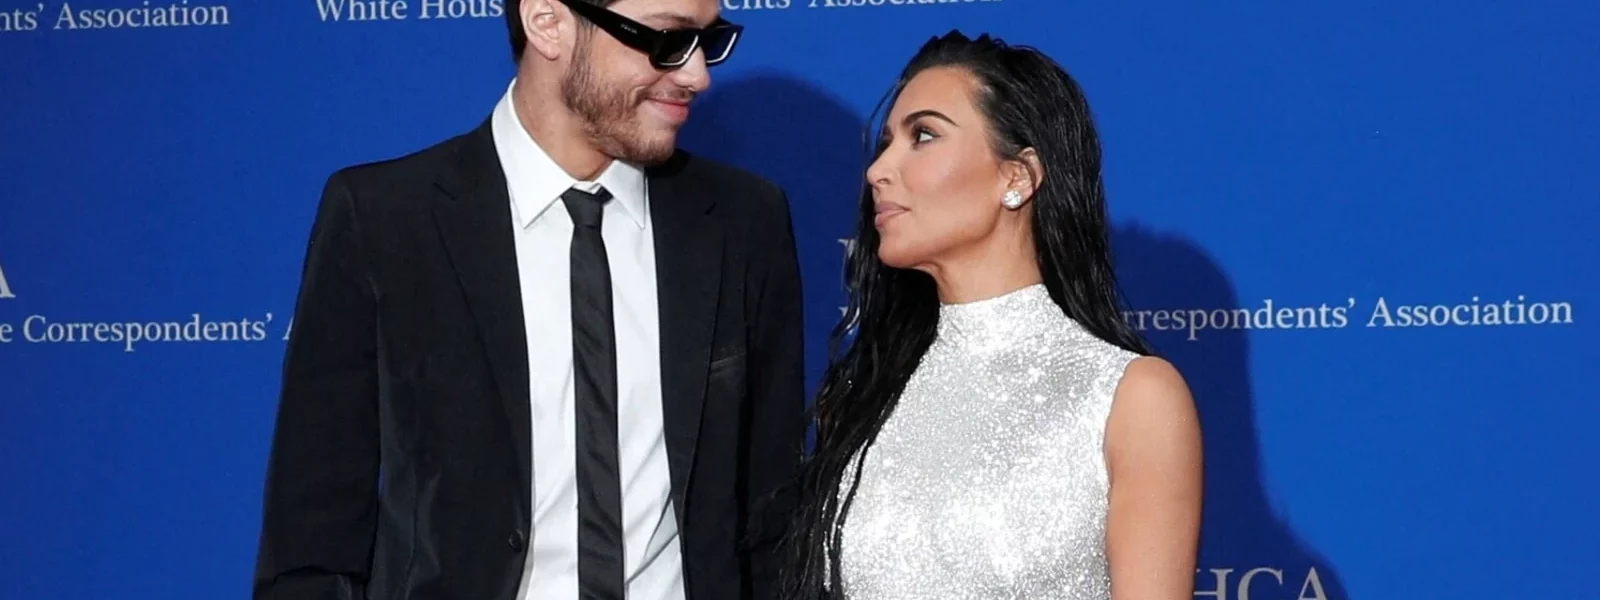 Kim Kardashian and Pete Davidson Make Red Carpet Debut at 2022 White House Correspondents' Dinner